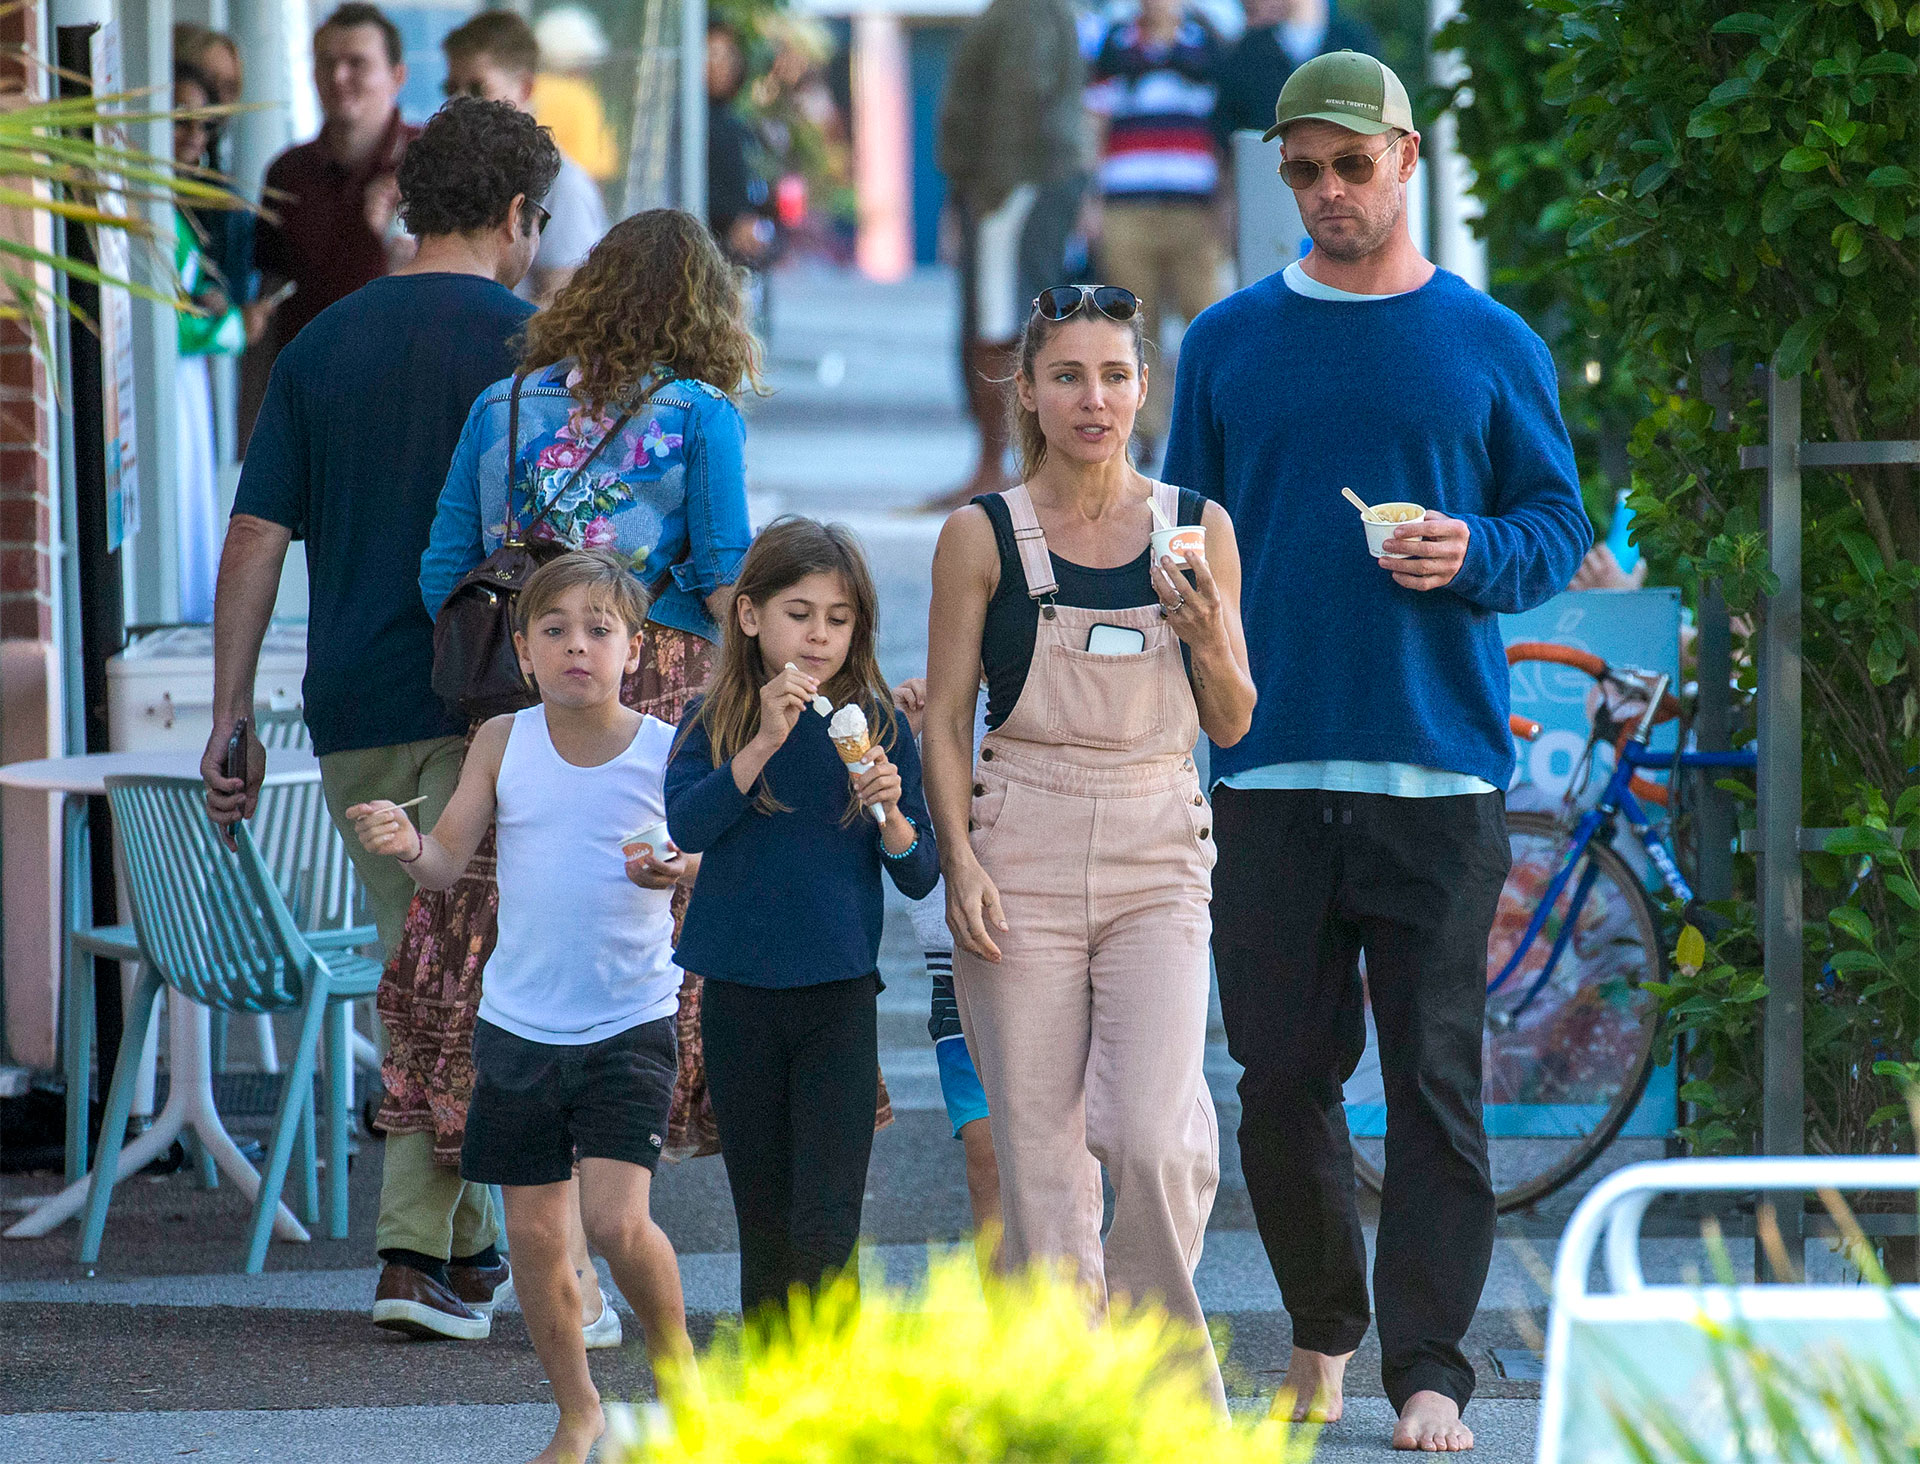 Día en familia. Elsa Pataky y Chris Hemsworth salieron a pasear y disfrutaron de un momento al aire libre junto a sus hijos. Se detuvieron a comprar helado y siguieron su marcha por Byron Bay, Australia. Más temprano, él había estado surfeando con su hijo